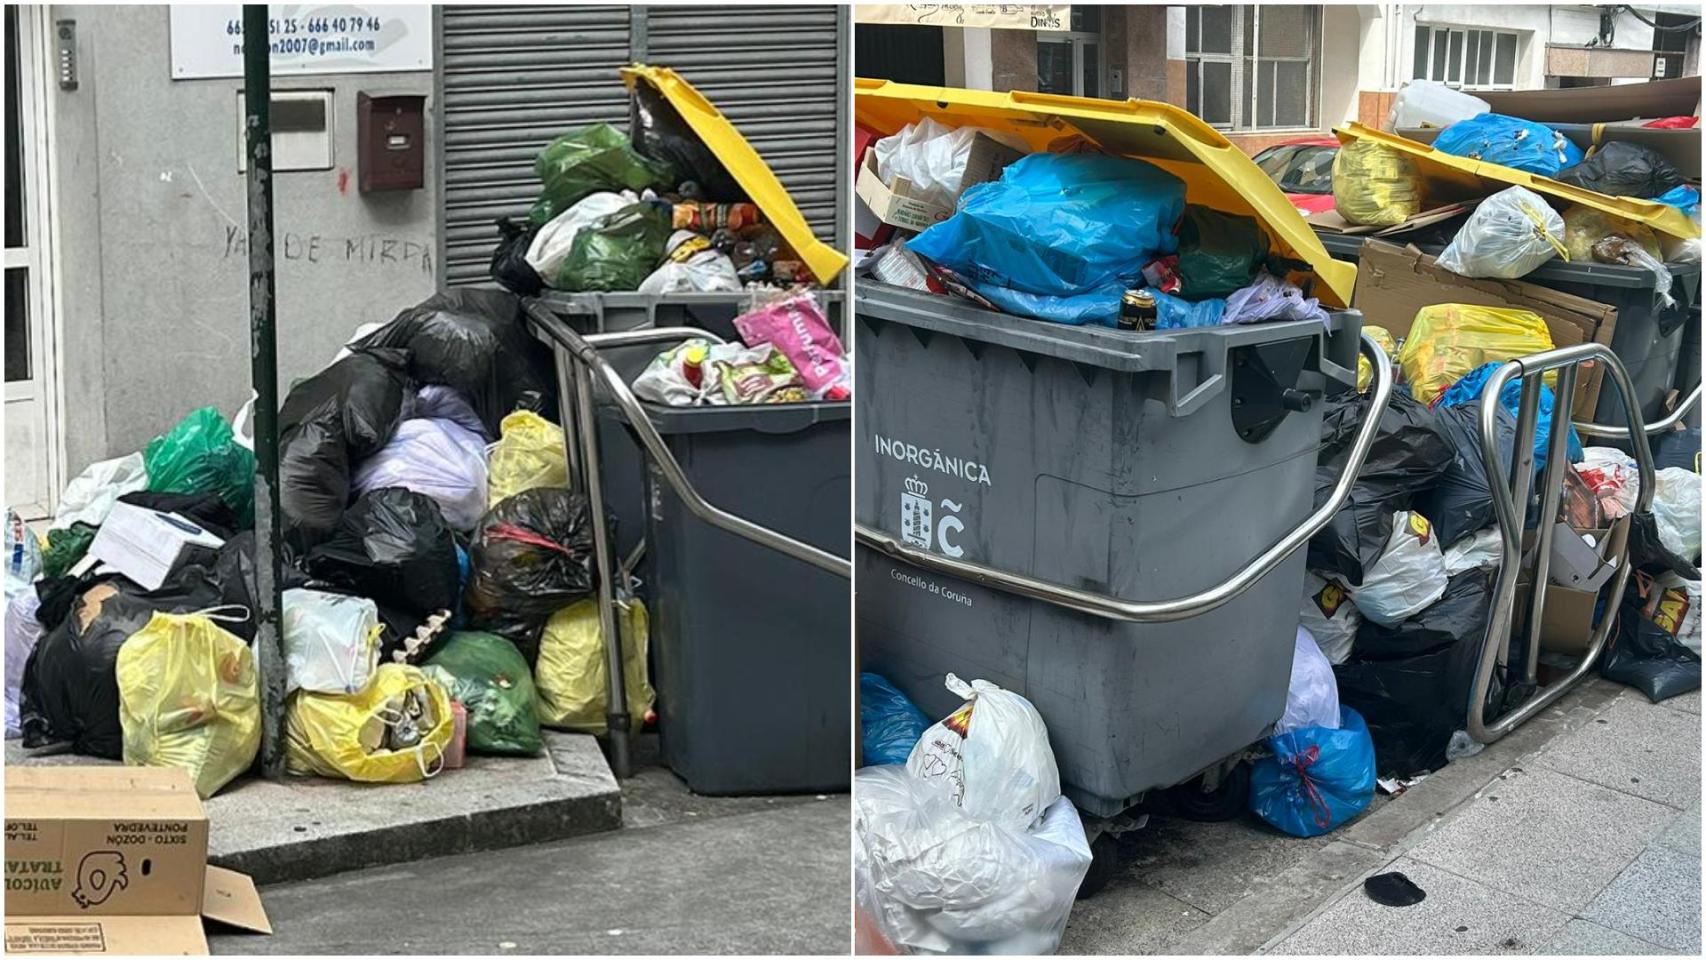 Contenedores con basura acumulada tras la huelga en A Coruña